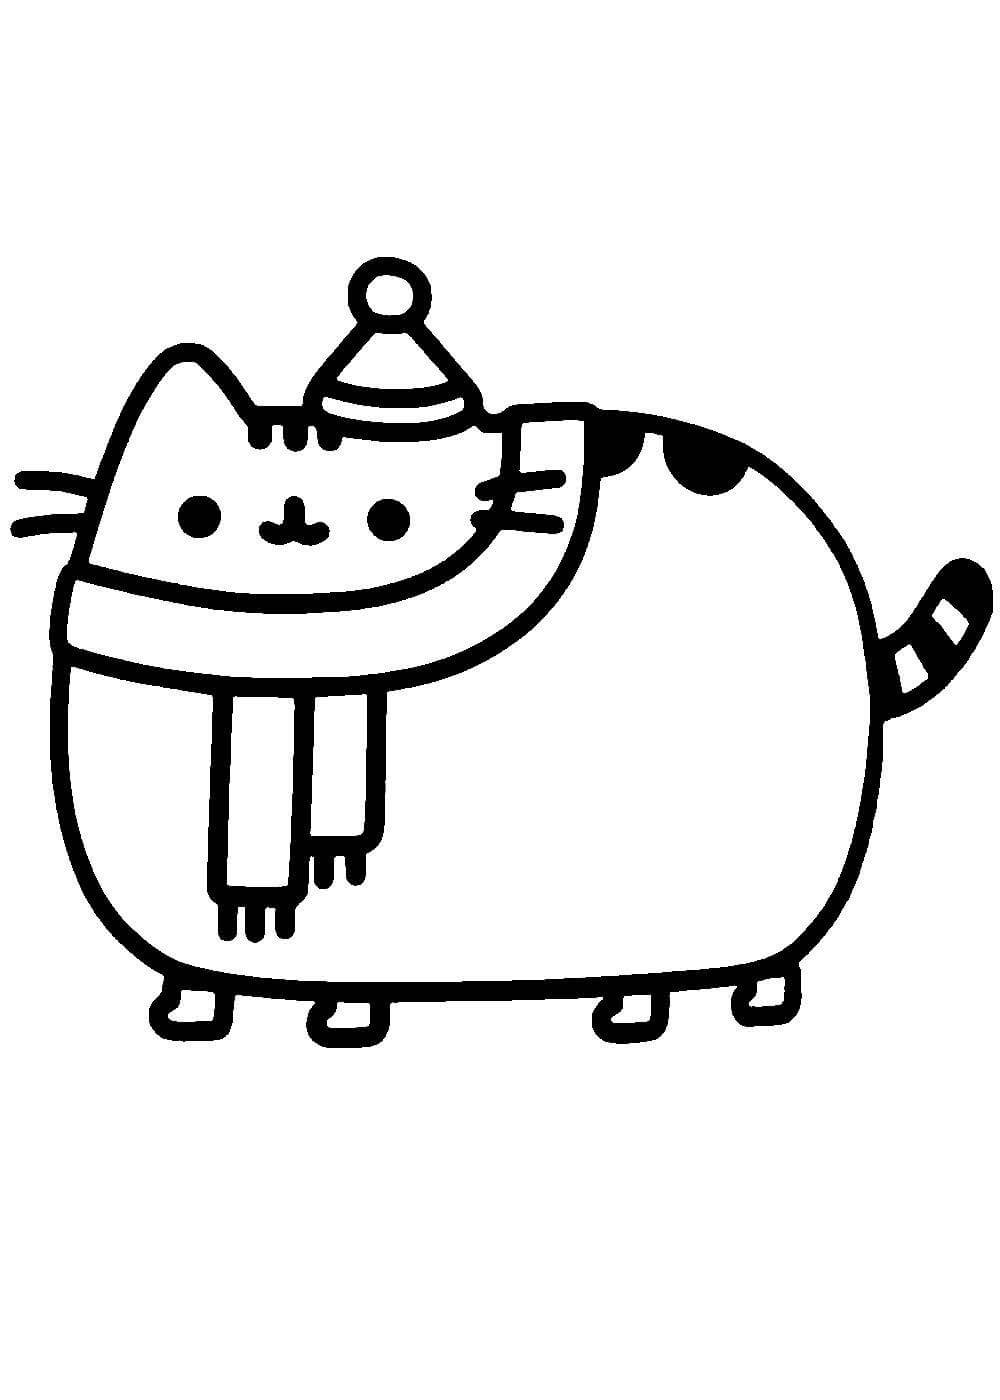 Забавный толстый кот дети обучаются игре вектор раскраски страницы книги для детей что говорит кот